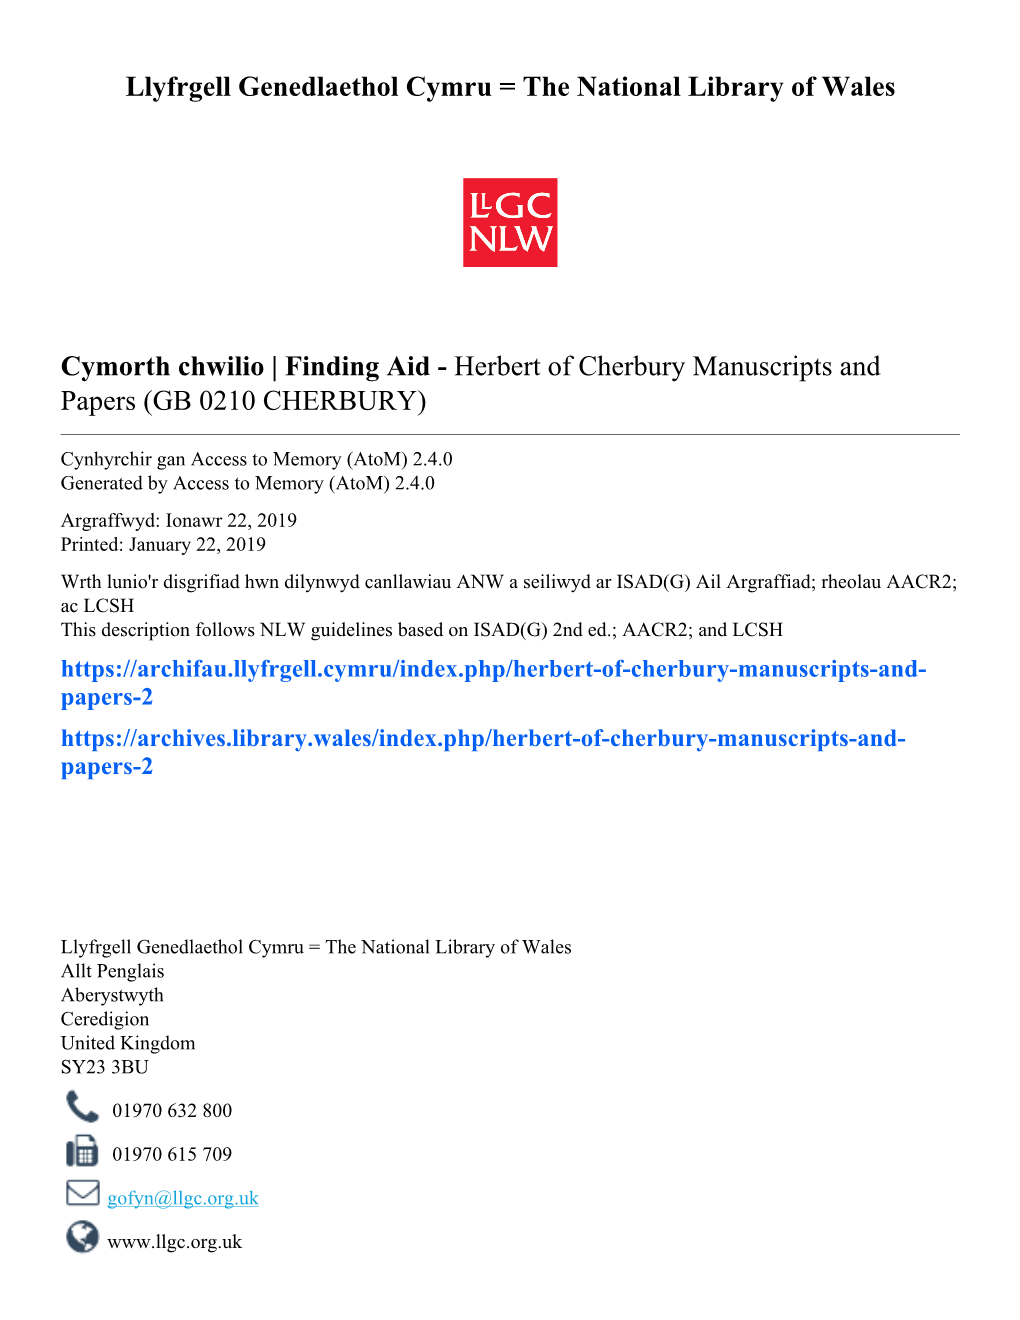 Herbert of Cherbury Manuscripts and Papers (GB 0210 CHERBURY)